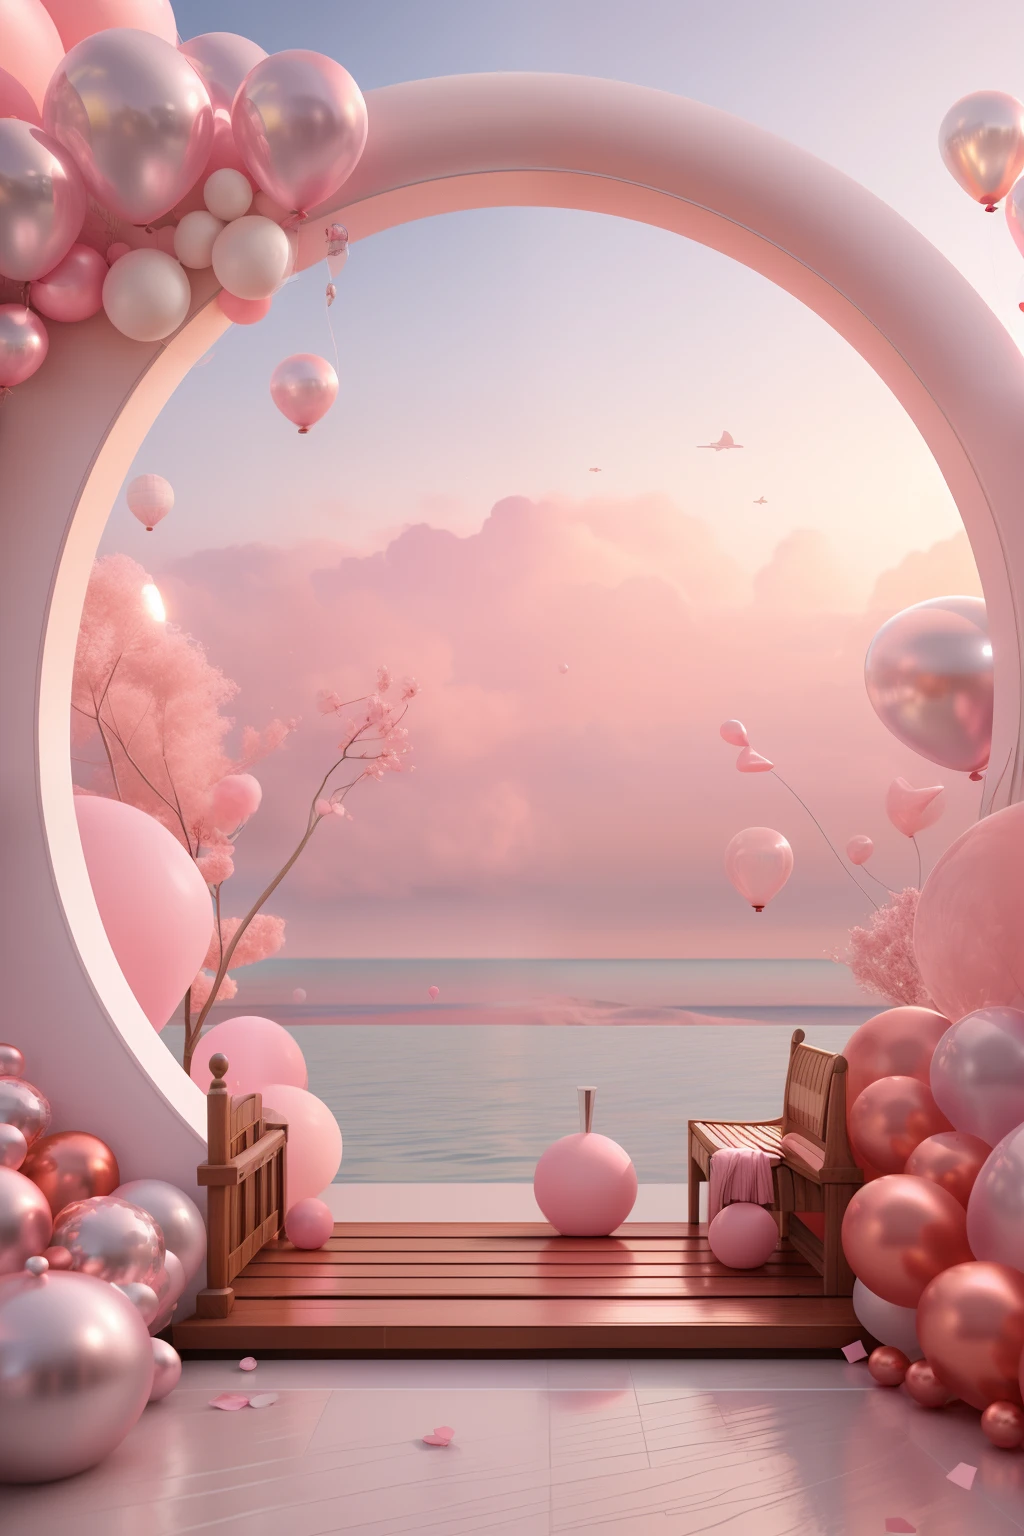 ピンクと白のアーチがあります，風船とベンチ付き, ピンクの禅スタイル, ピンクの風景, 夢のシーン, ピンクの海を見ながら, 3Dレンダリング様式, 3Dレンダリング様式, シュールな 3D レンダリング, 活気ある風景, 超現実的な夢の風景, 3D スタイライズシーン, 3Dレンダリングとして様式化, 夢のような雰囲気とドラマ